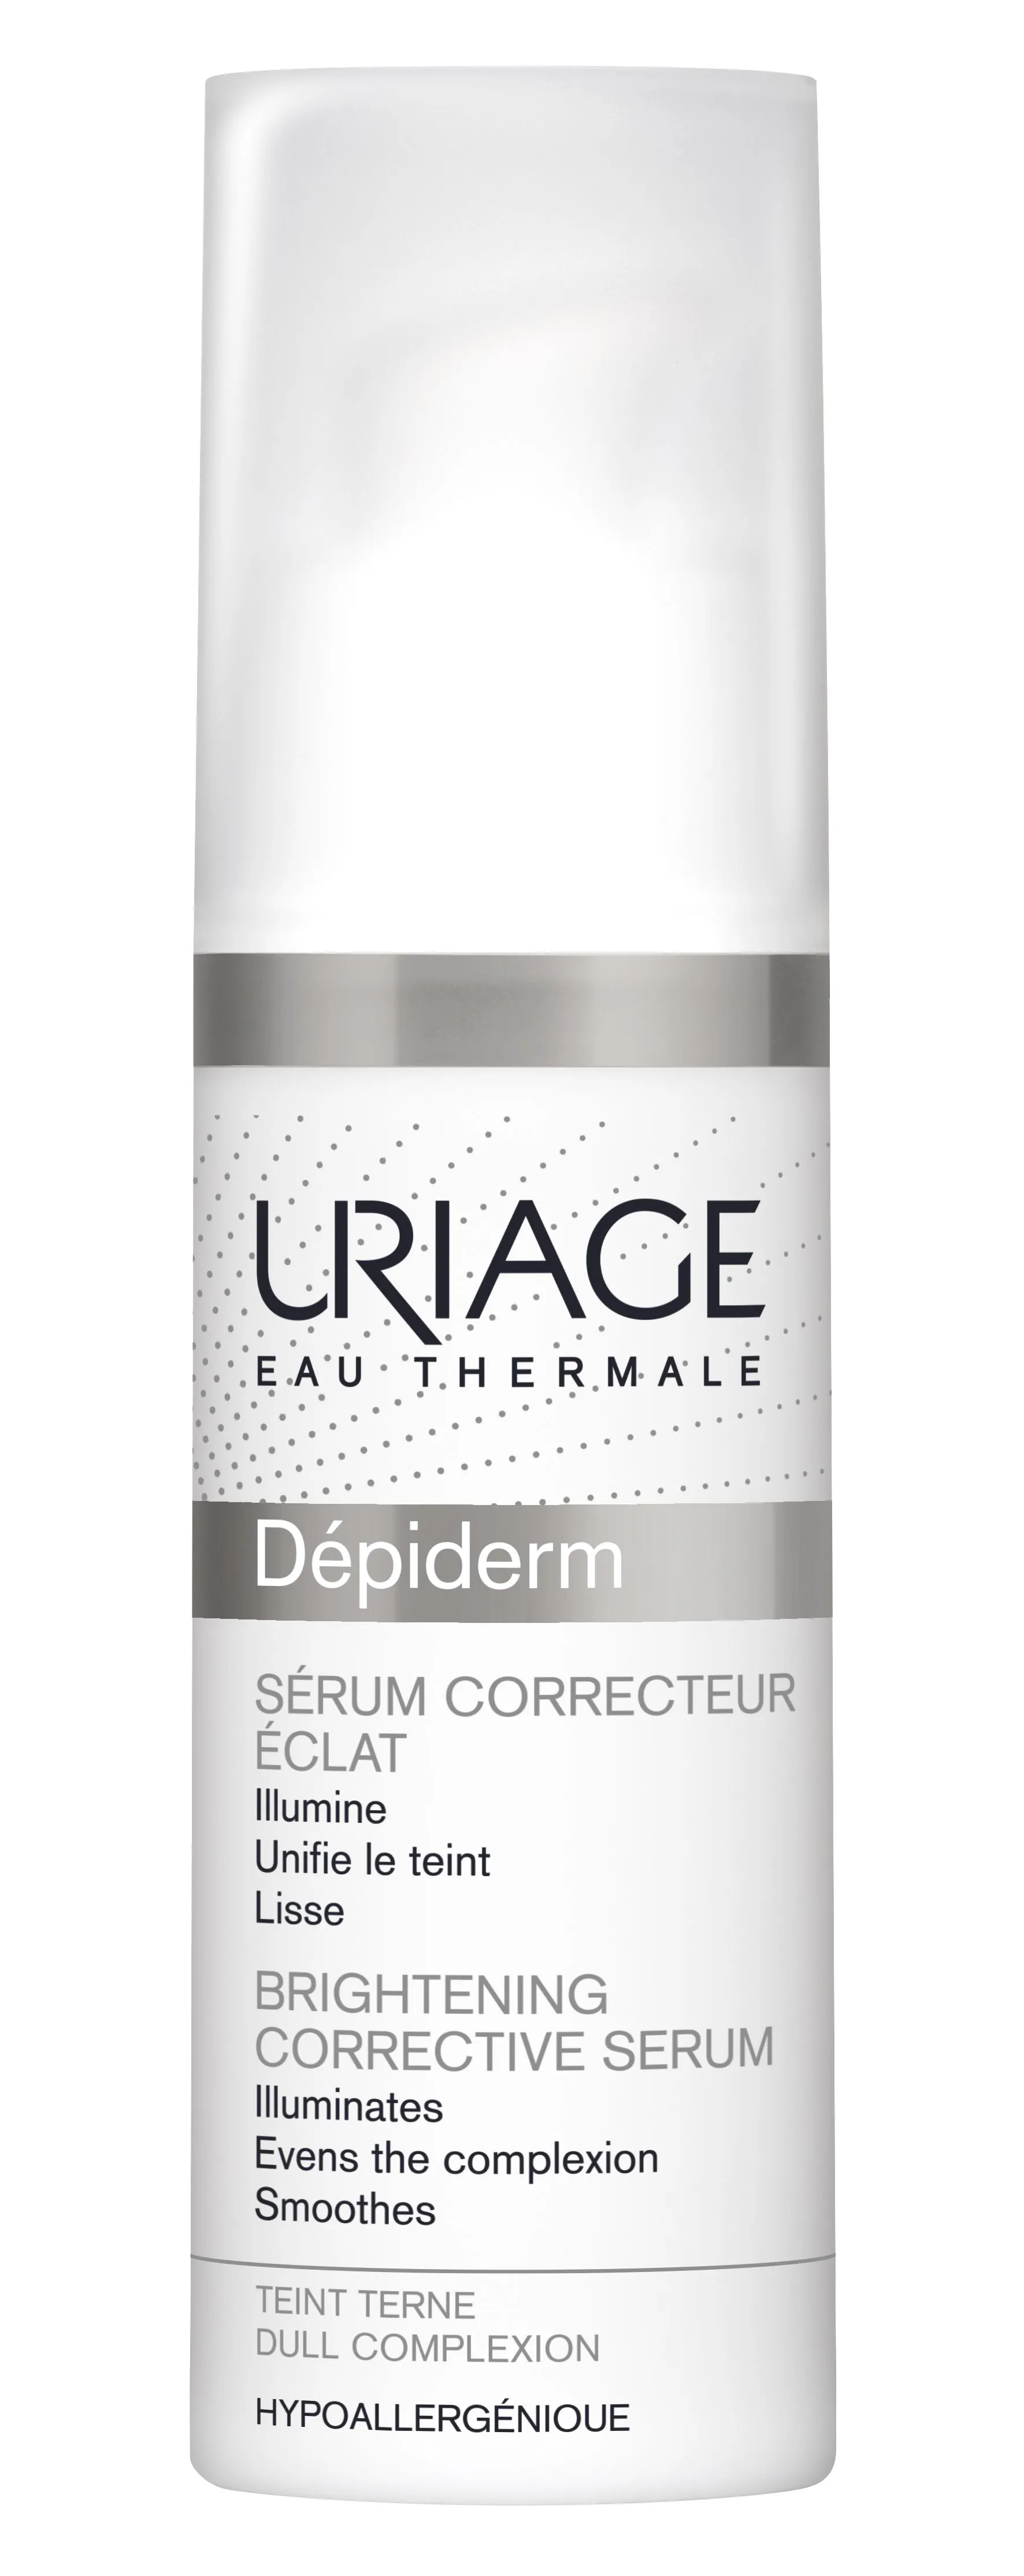 Uriage Depiderm Serum Correcteur F zesvětlující korekční sérum 30 ml